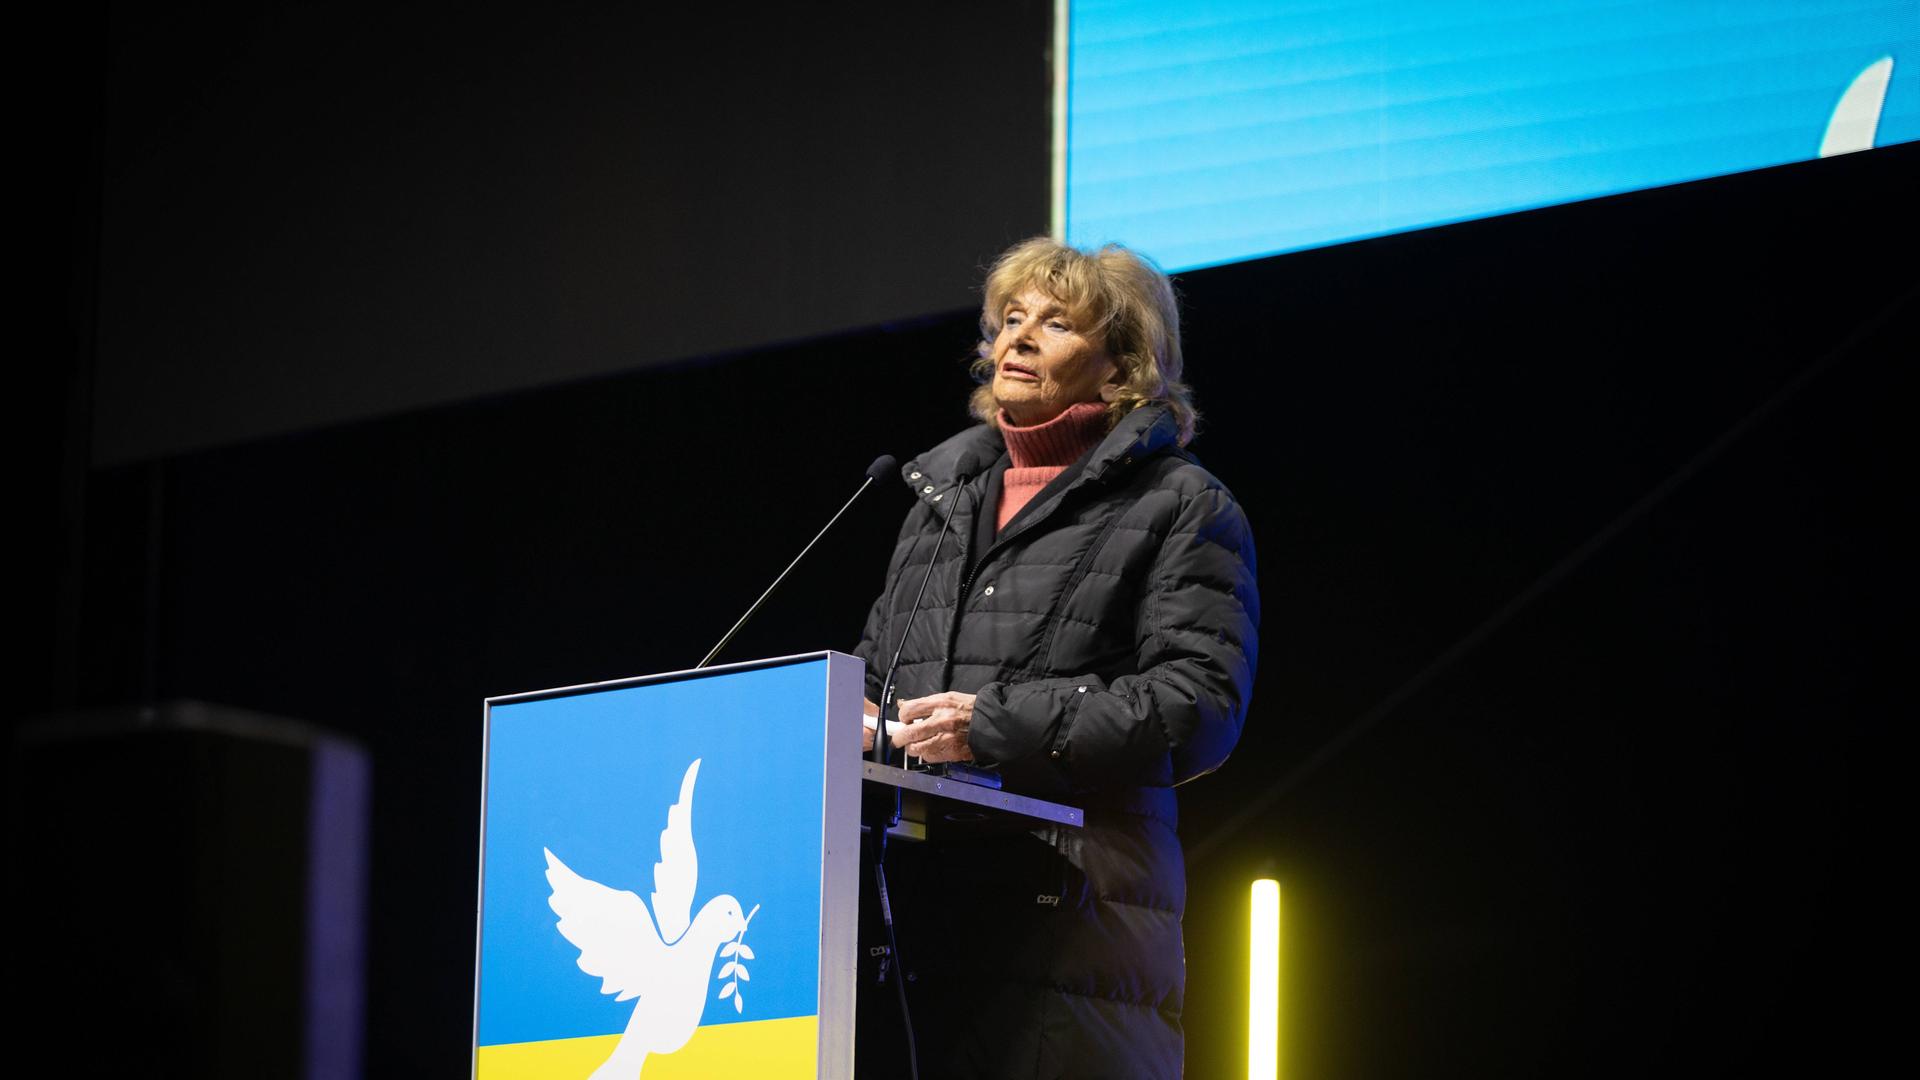 Die ehemalige Präsidentin des Zentralrats der Juden in Deutschland, Charlotte Knobloch, steht hinter einem Rednerpult in Farben der ukrainischen Flagge und spricht in ein Mikrofon.